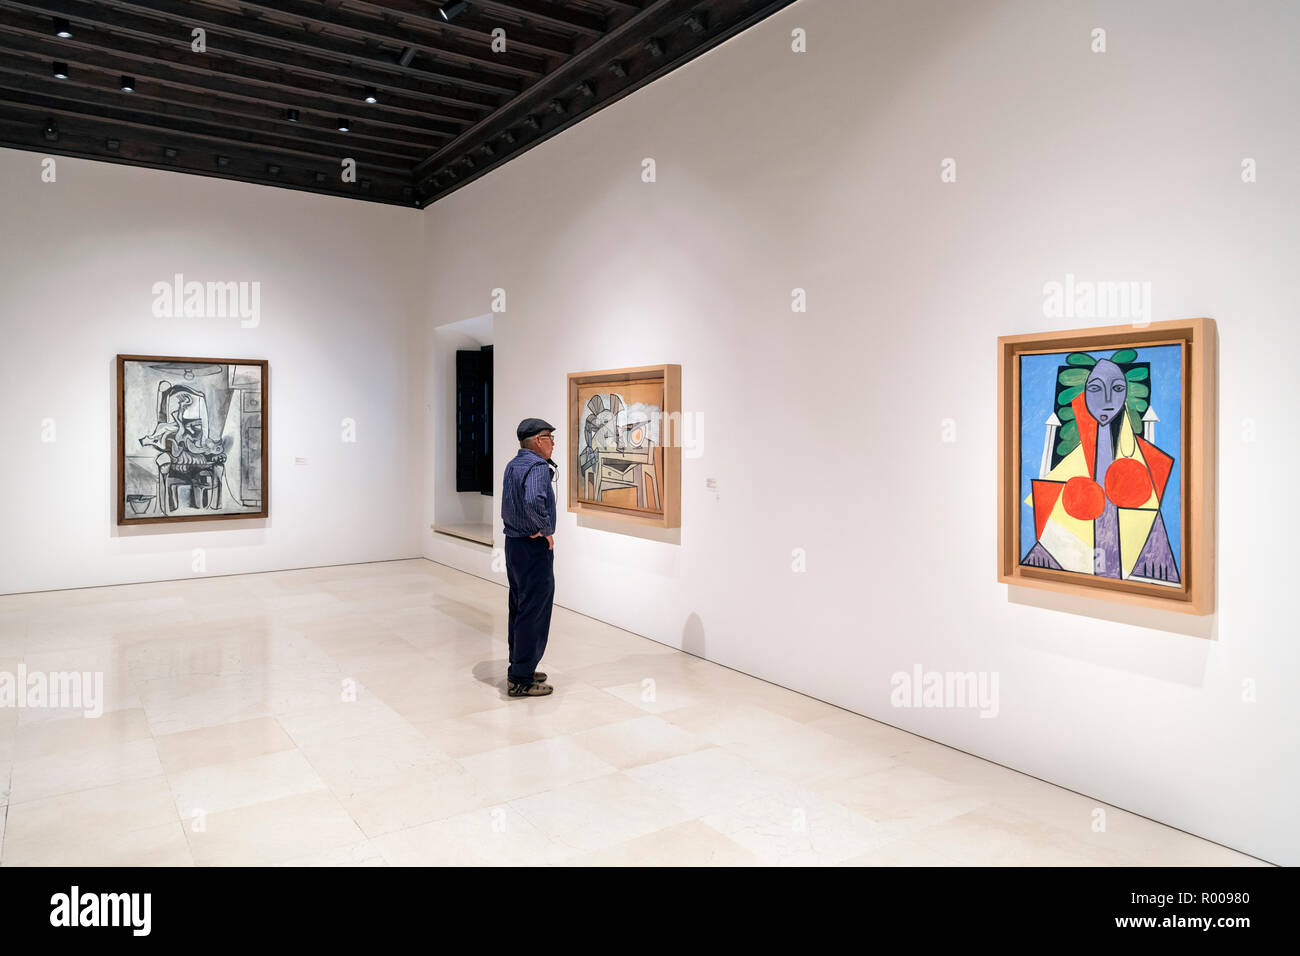 Malaga e il Museo Picasso. Il visitatore in una galleria al Museo Picasso, Malaga, Costa del Sol, Andalusia, Spagna Foto Stock